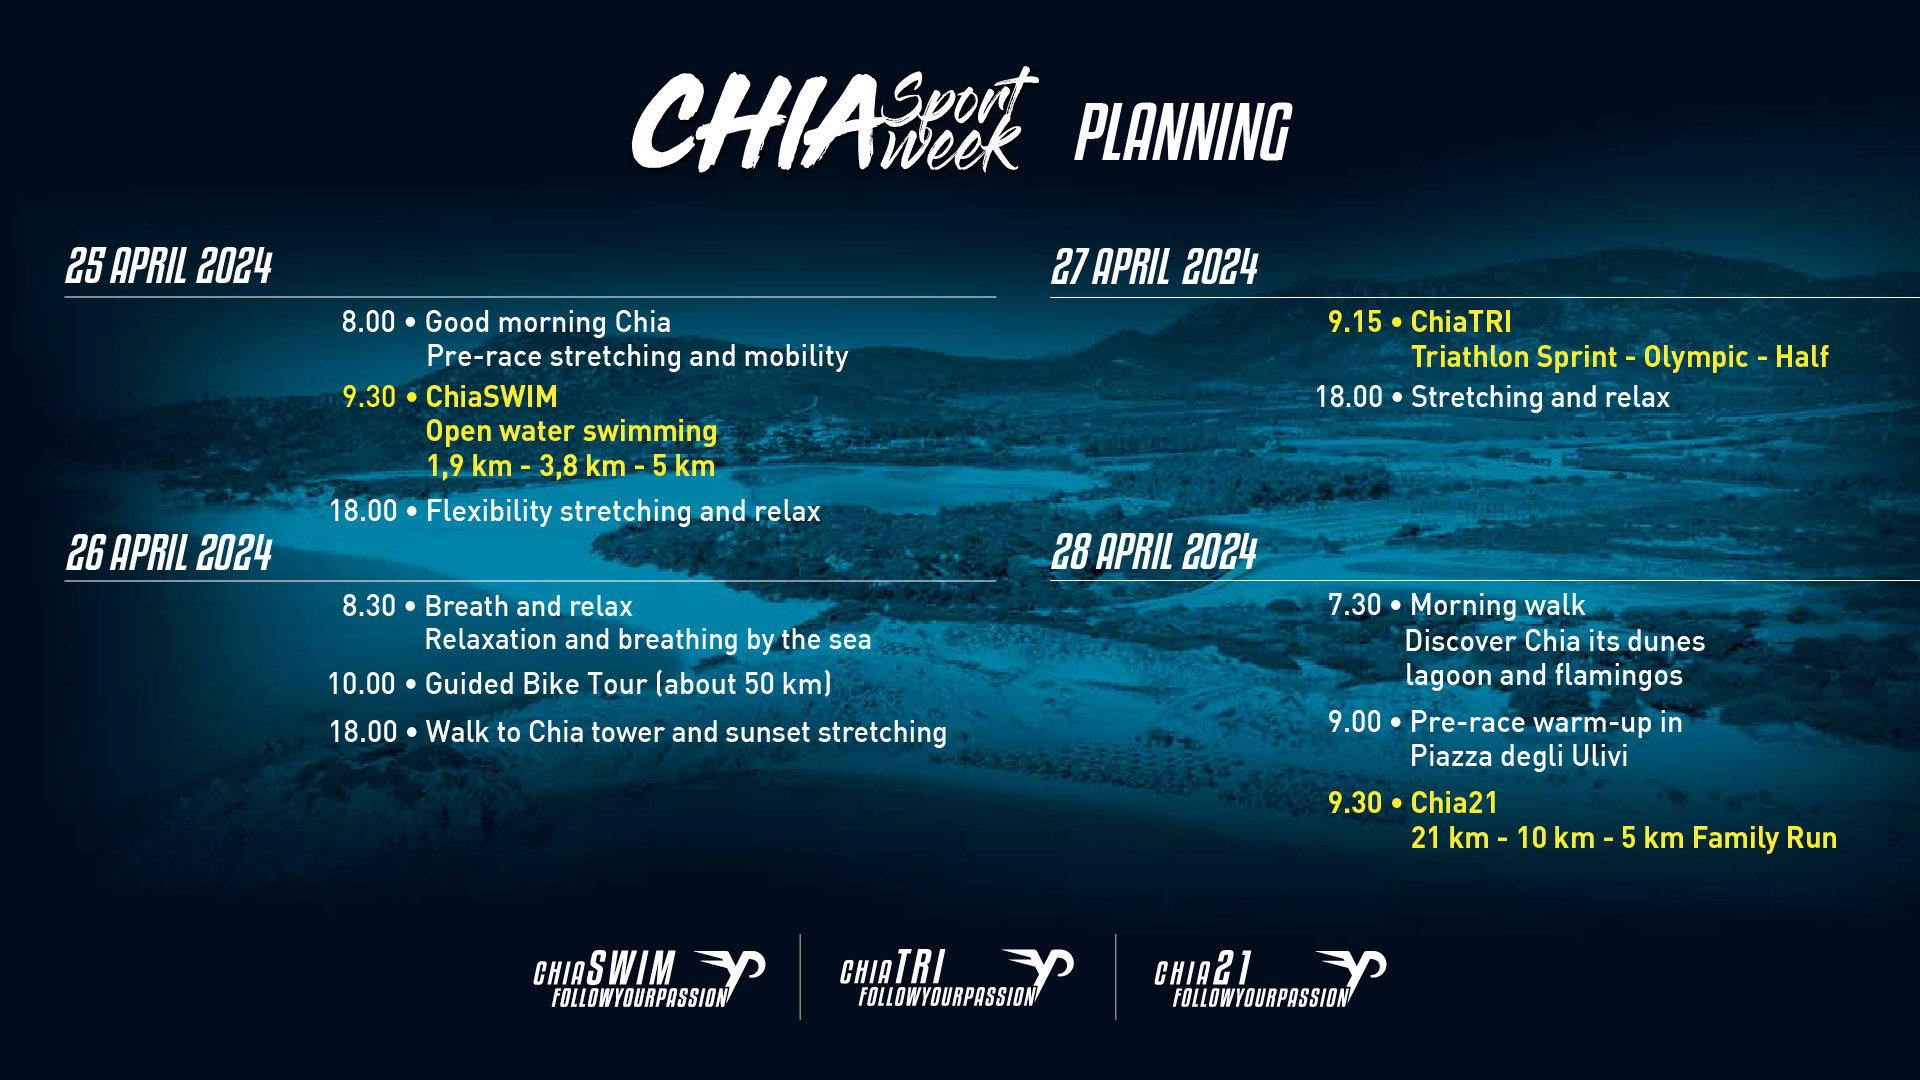 Planning Chia Sport Week 2024